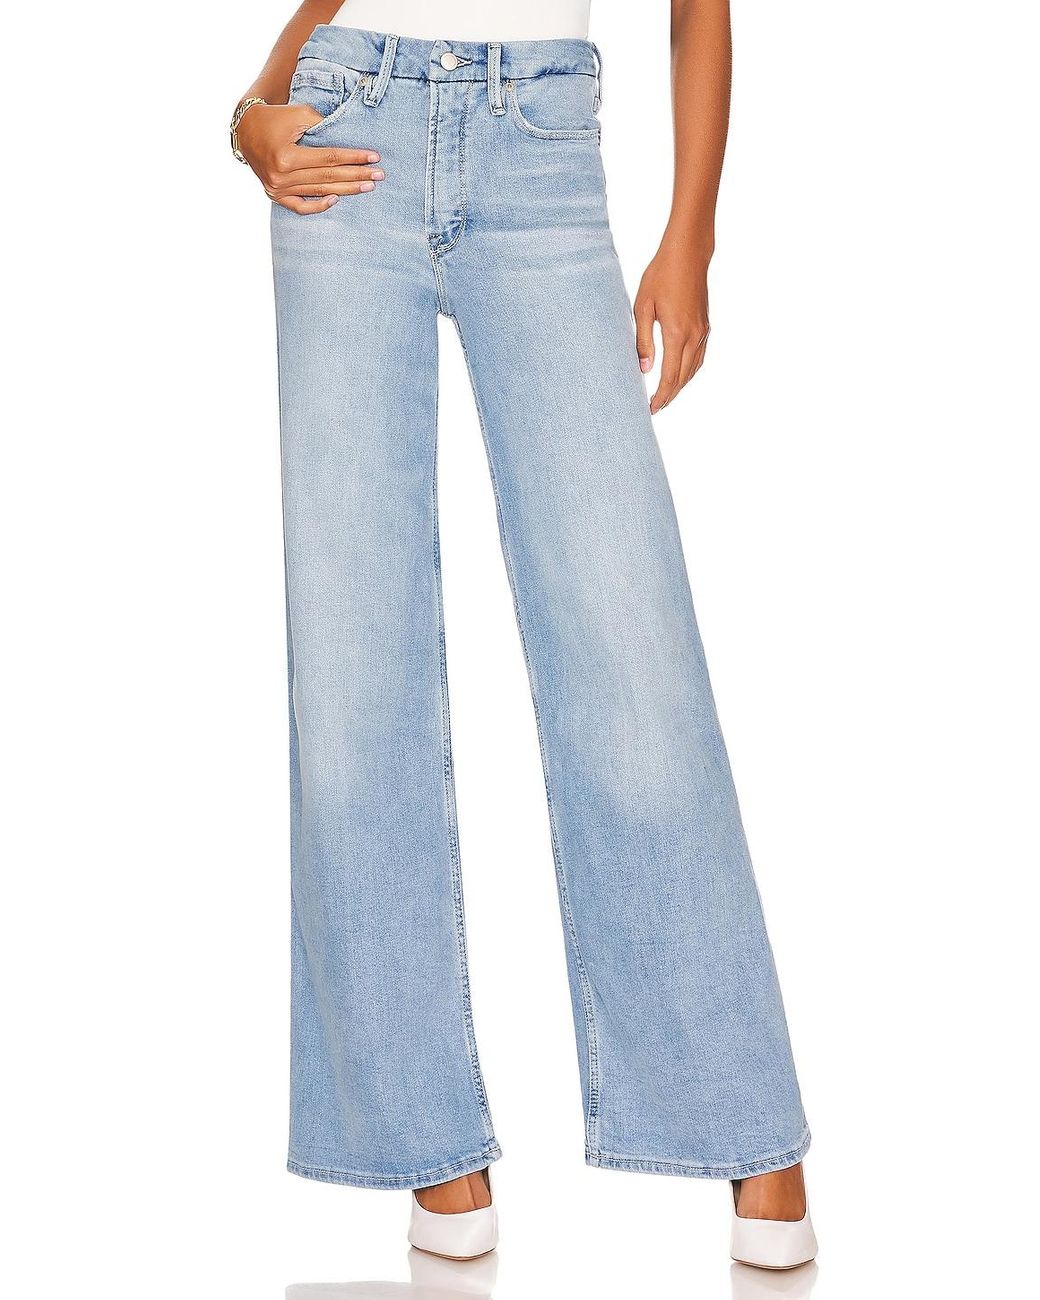 Damen Bekleidung Jeans Ausgestellte Jeans GOOD AMERICAN Baumwolle WEITER SCHNITT PALAZZO in Blau 